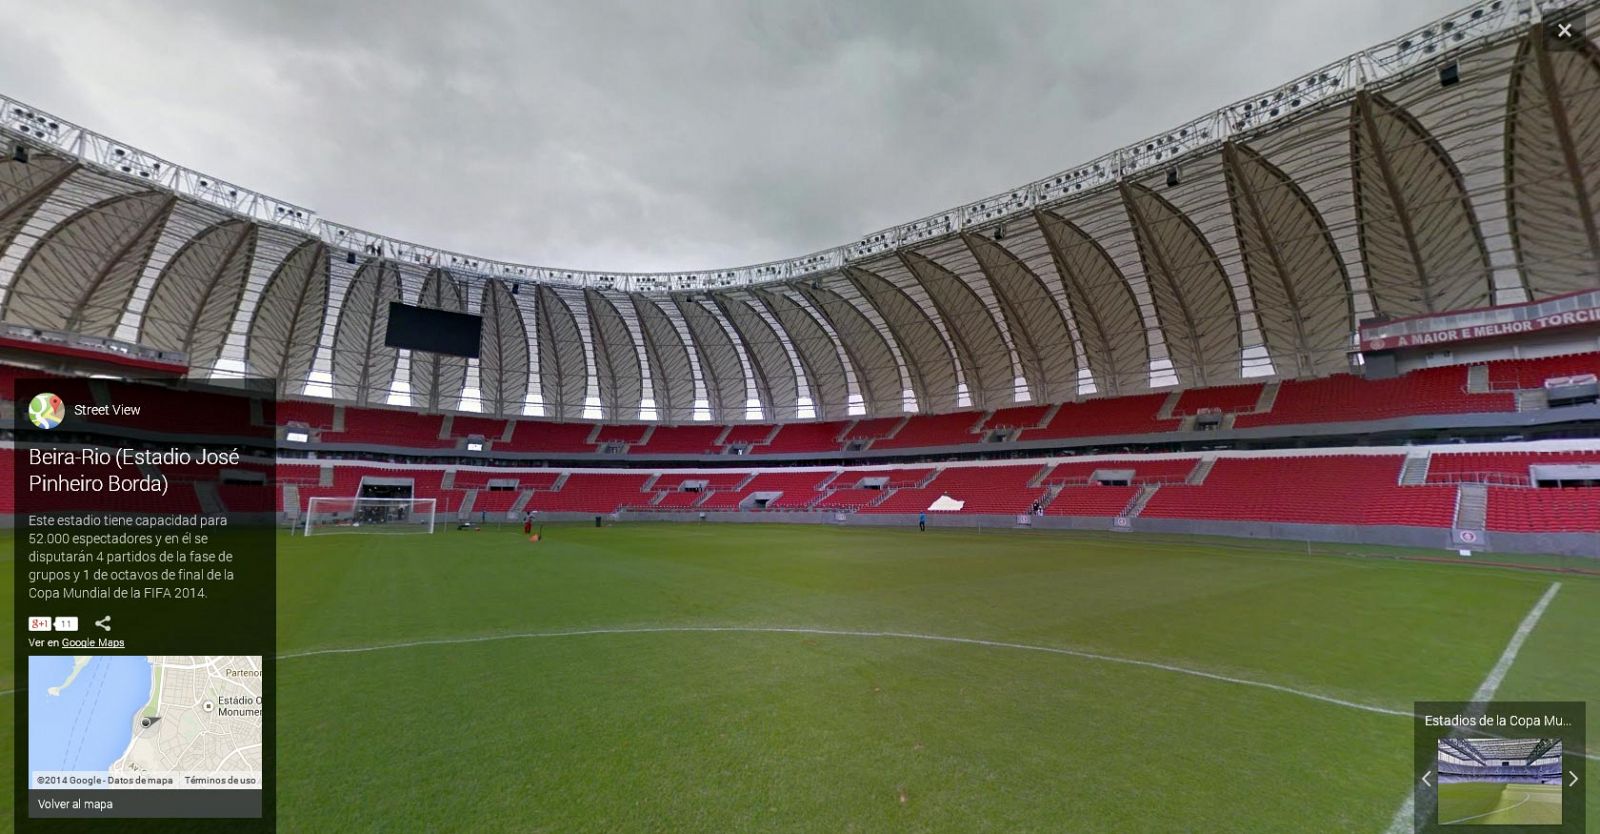 Estadio Beira-Rio, en Porto Alegre (Brasil) con capacidad para 52.000 espectadores.